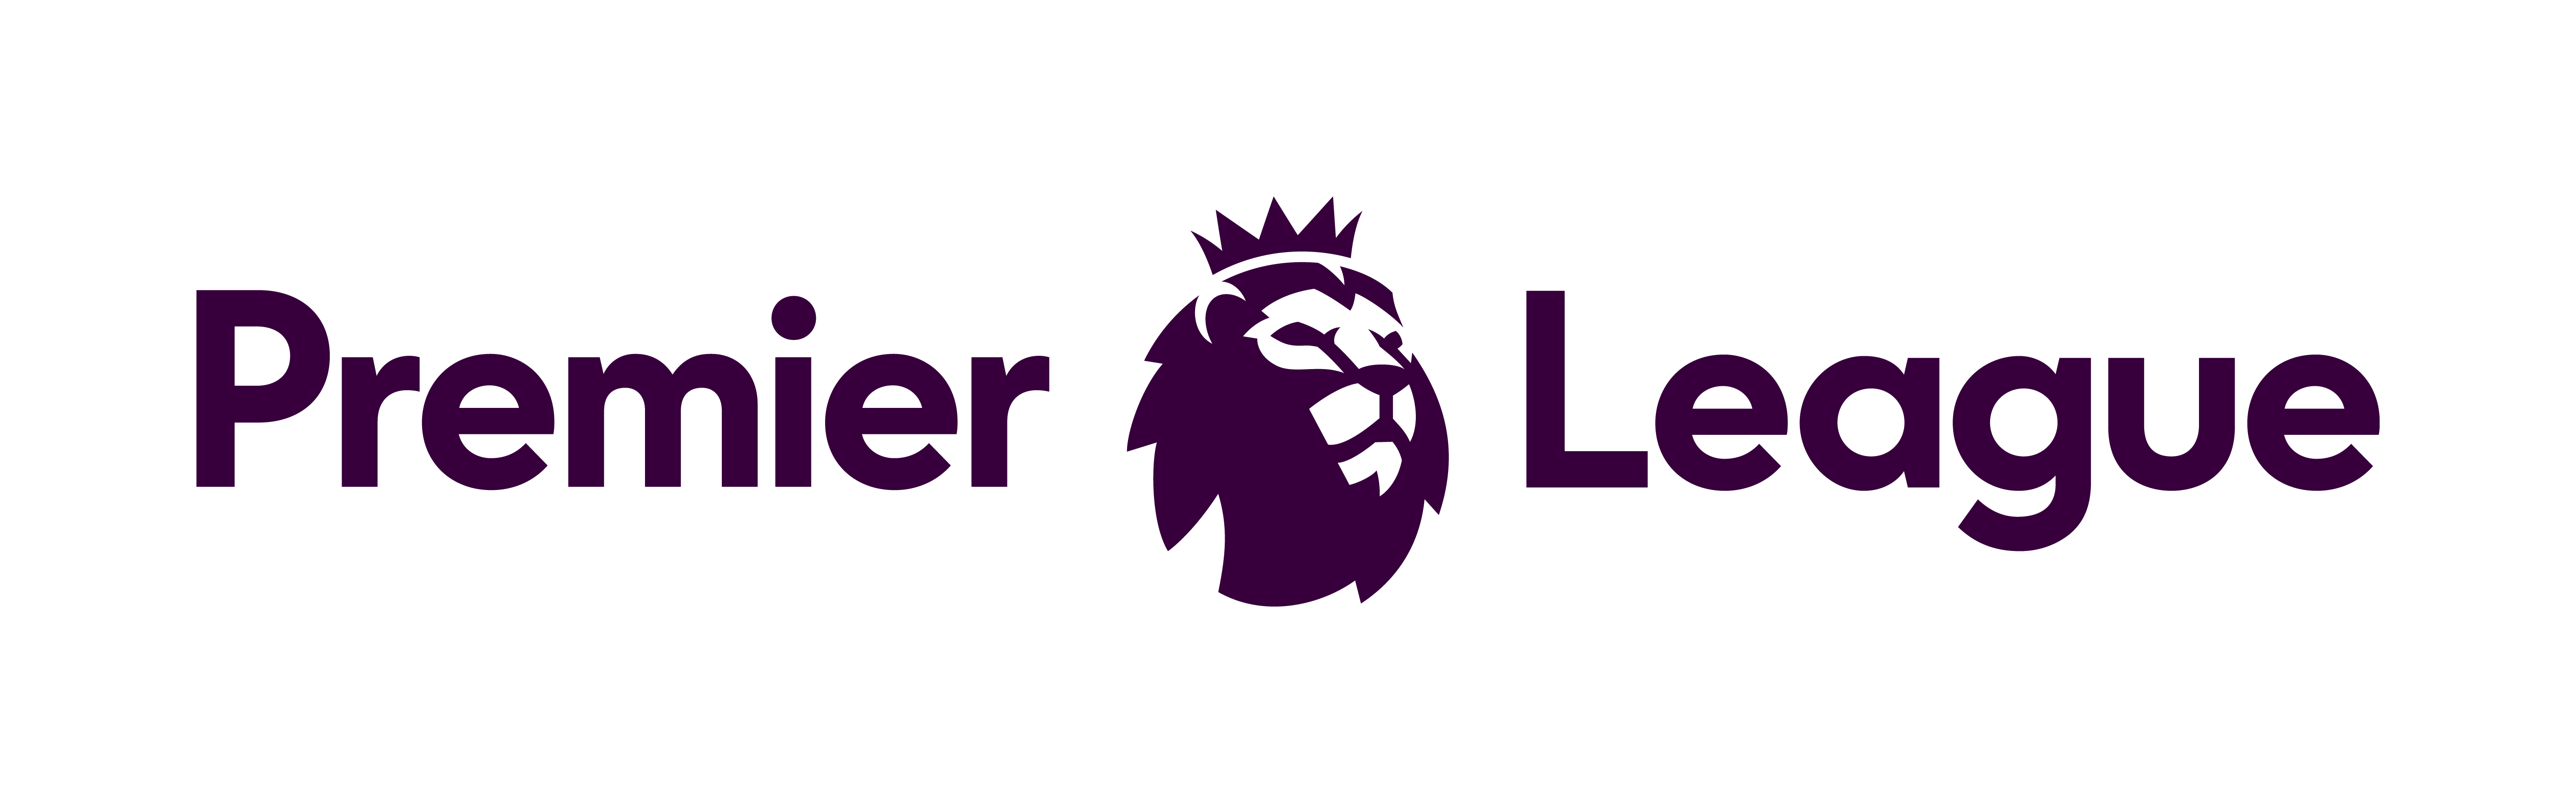 Английская премьер лига. Логотип премьер Лиги. Эмблема английской премьер Лиги. EPL логотип. Premier logo png